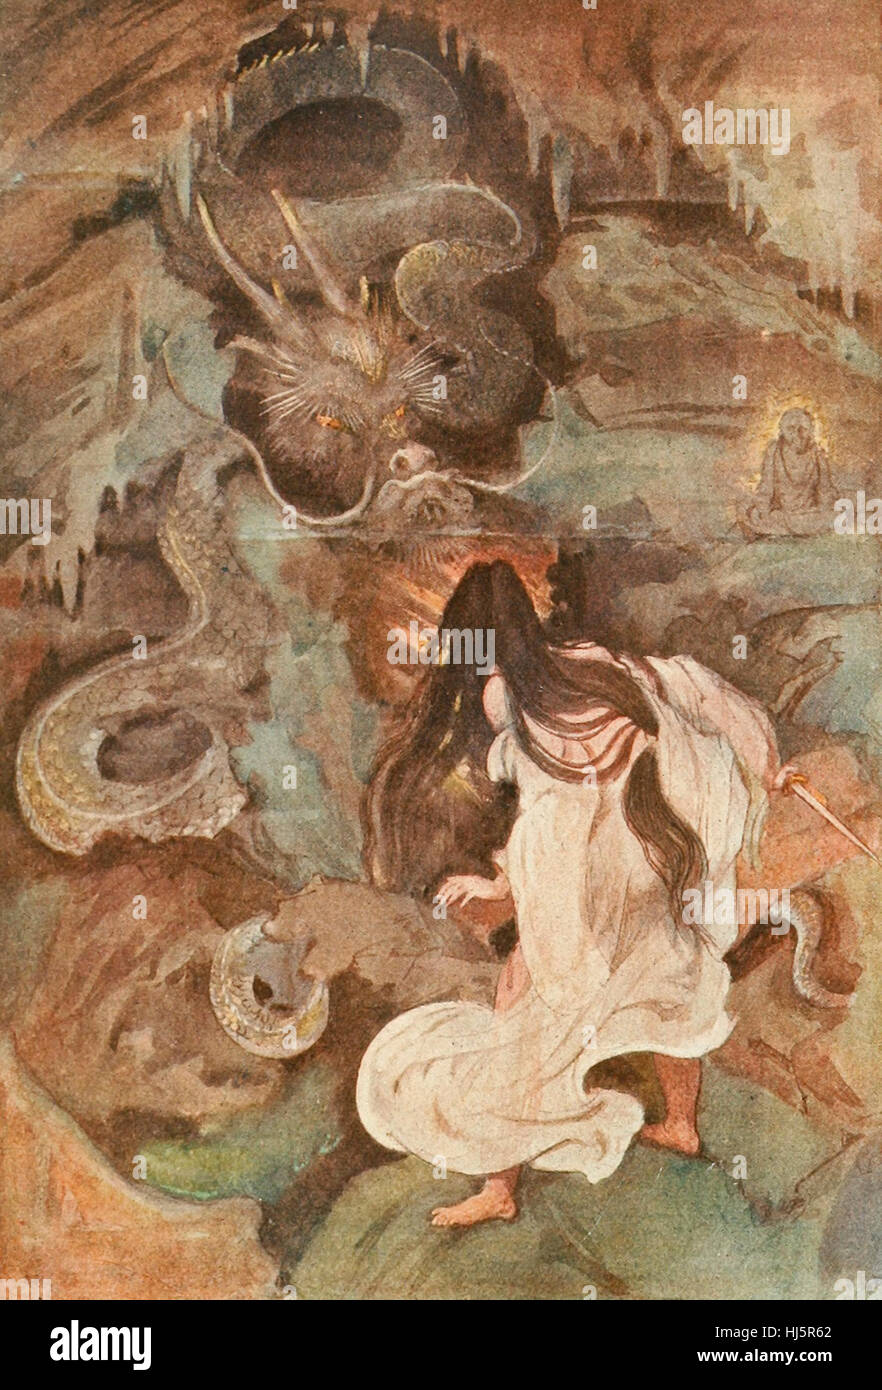 Tokoyo et le Serpent de mer, la Mythologie Japonaise Banque D'Images